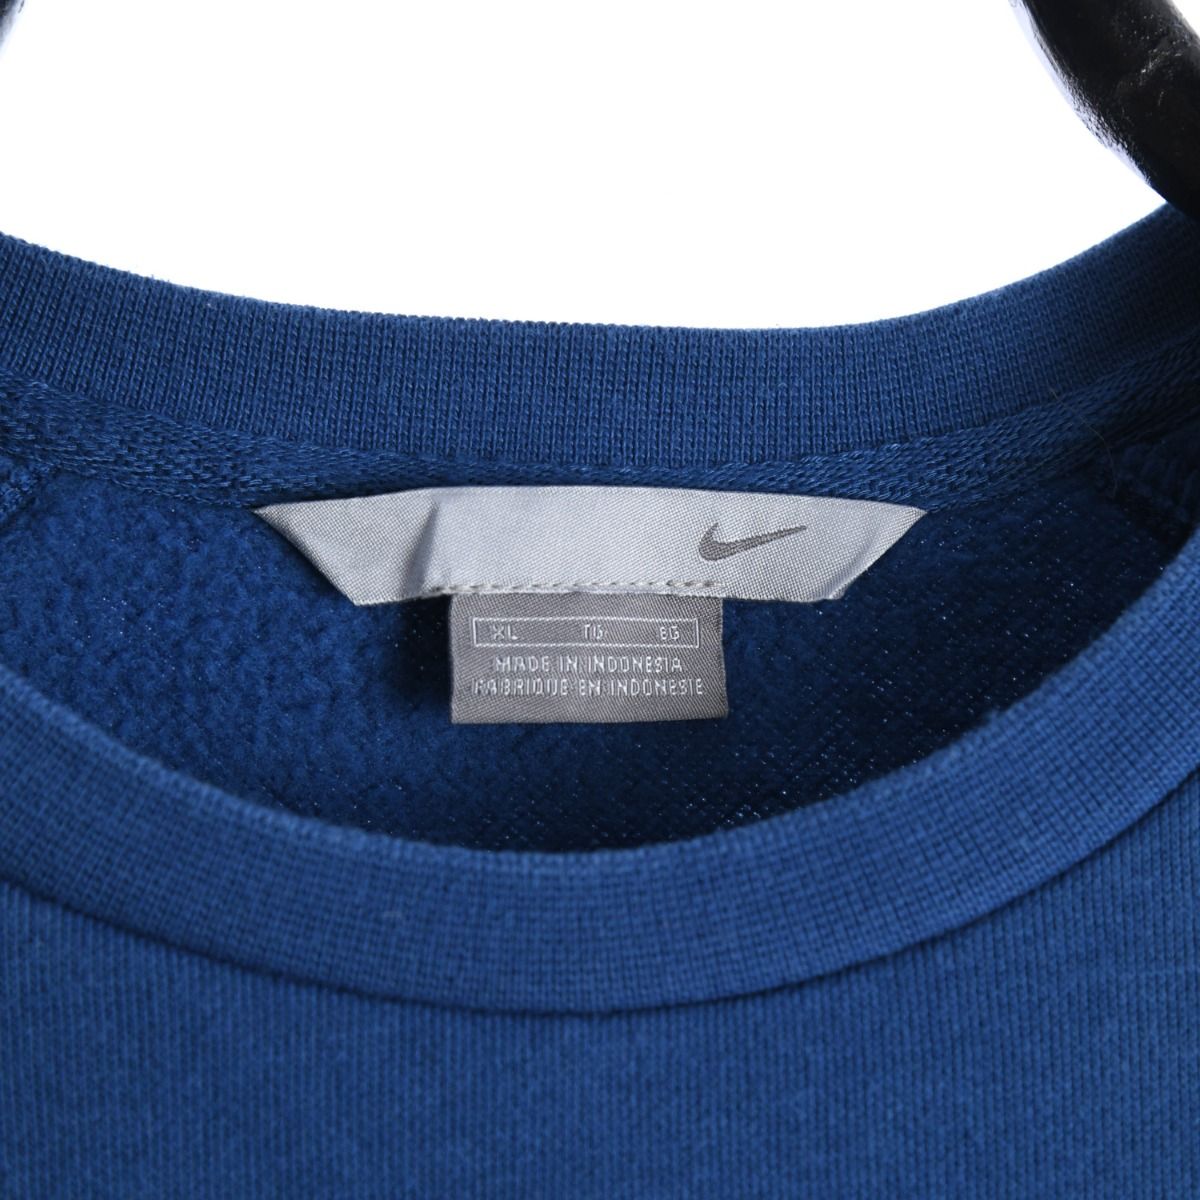 Nike Early 2000s Blue Sweatshirt